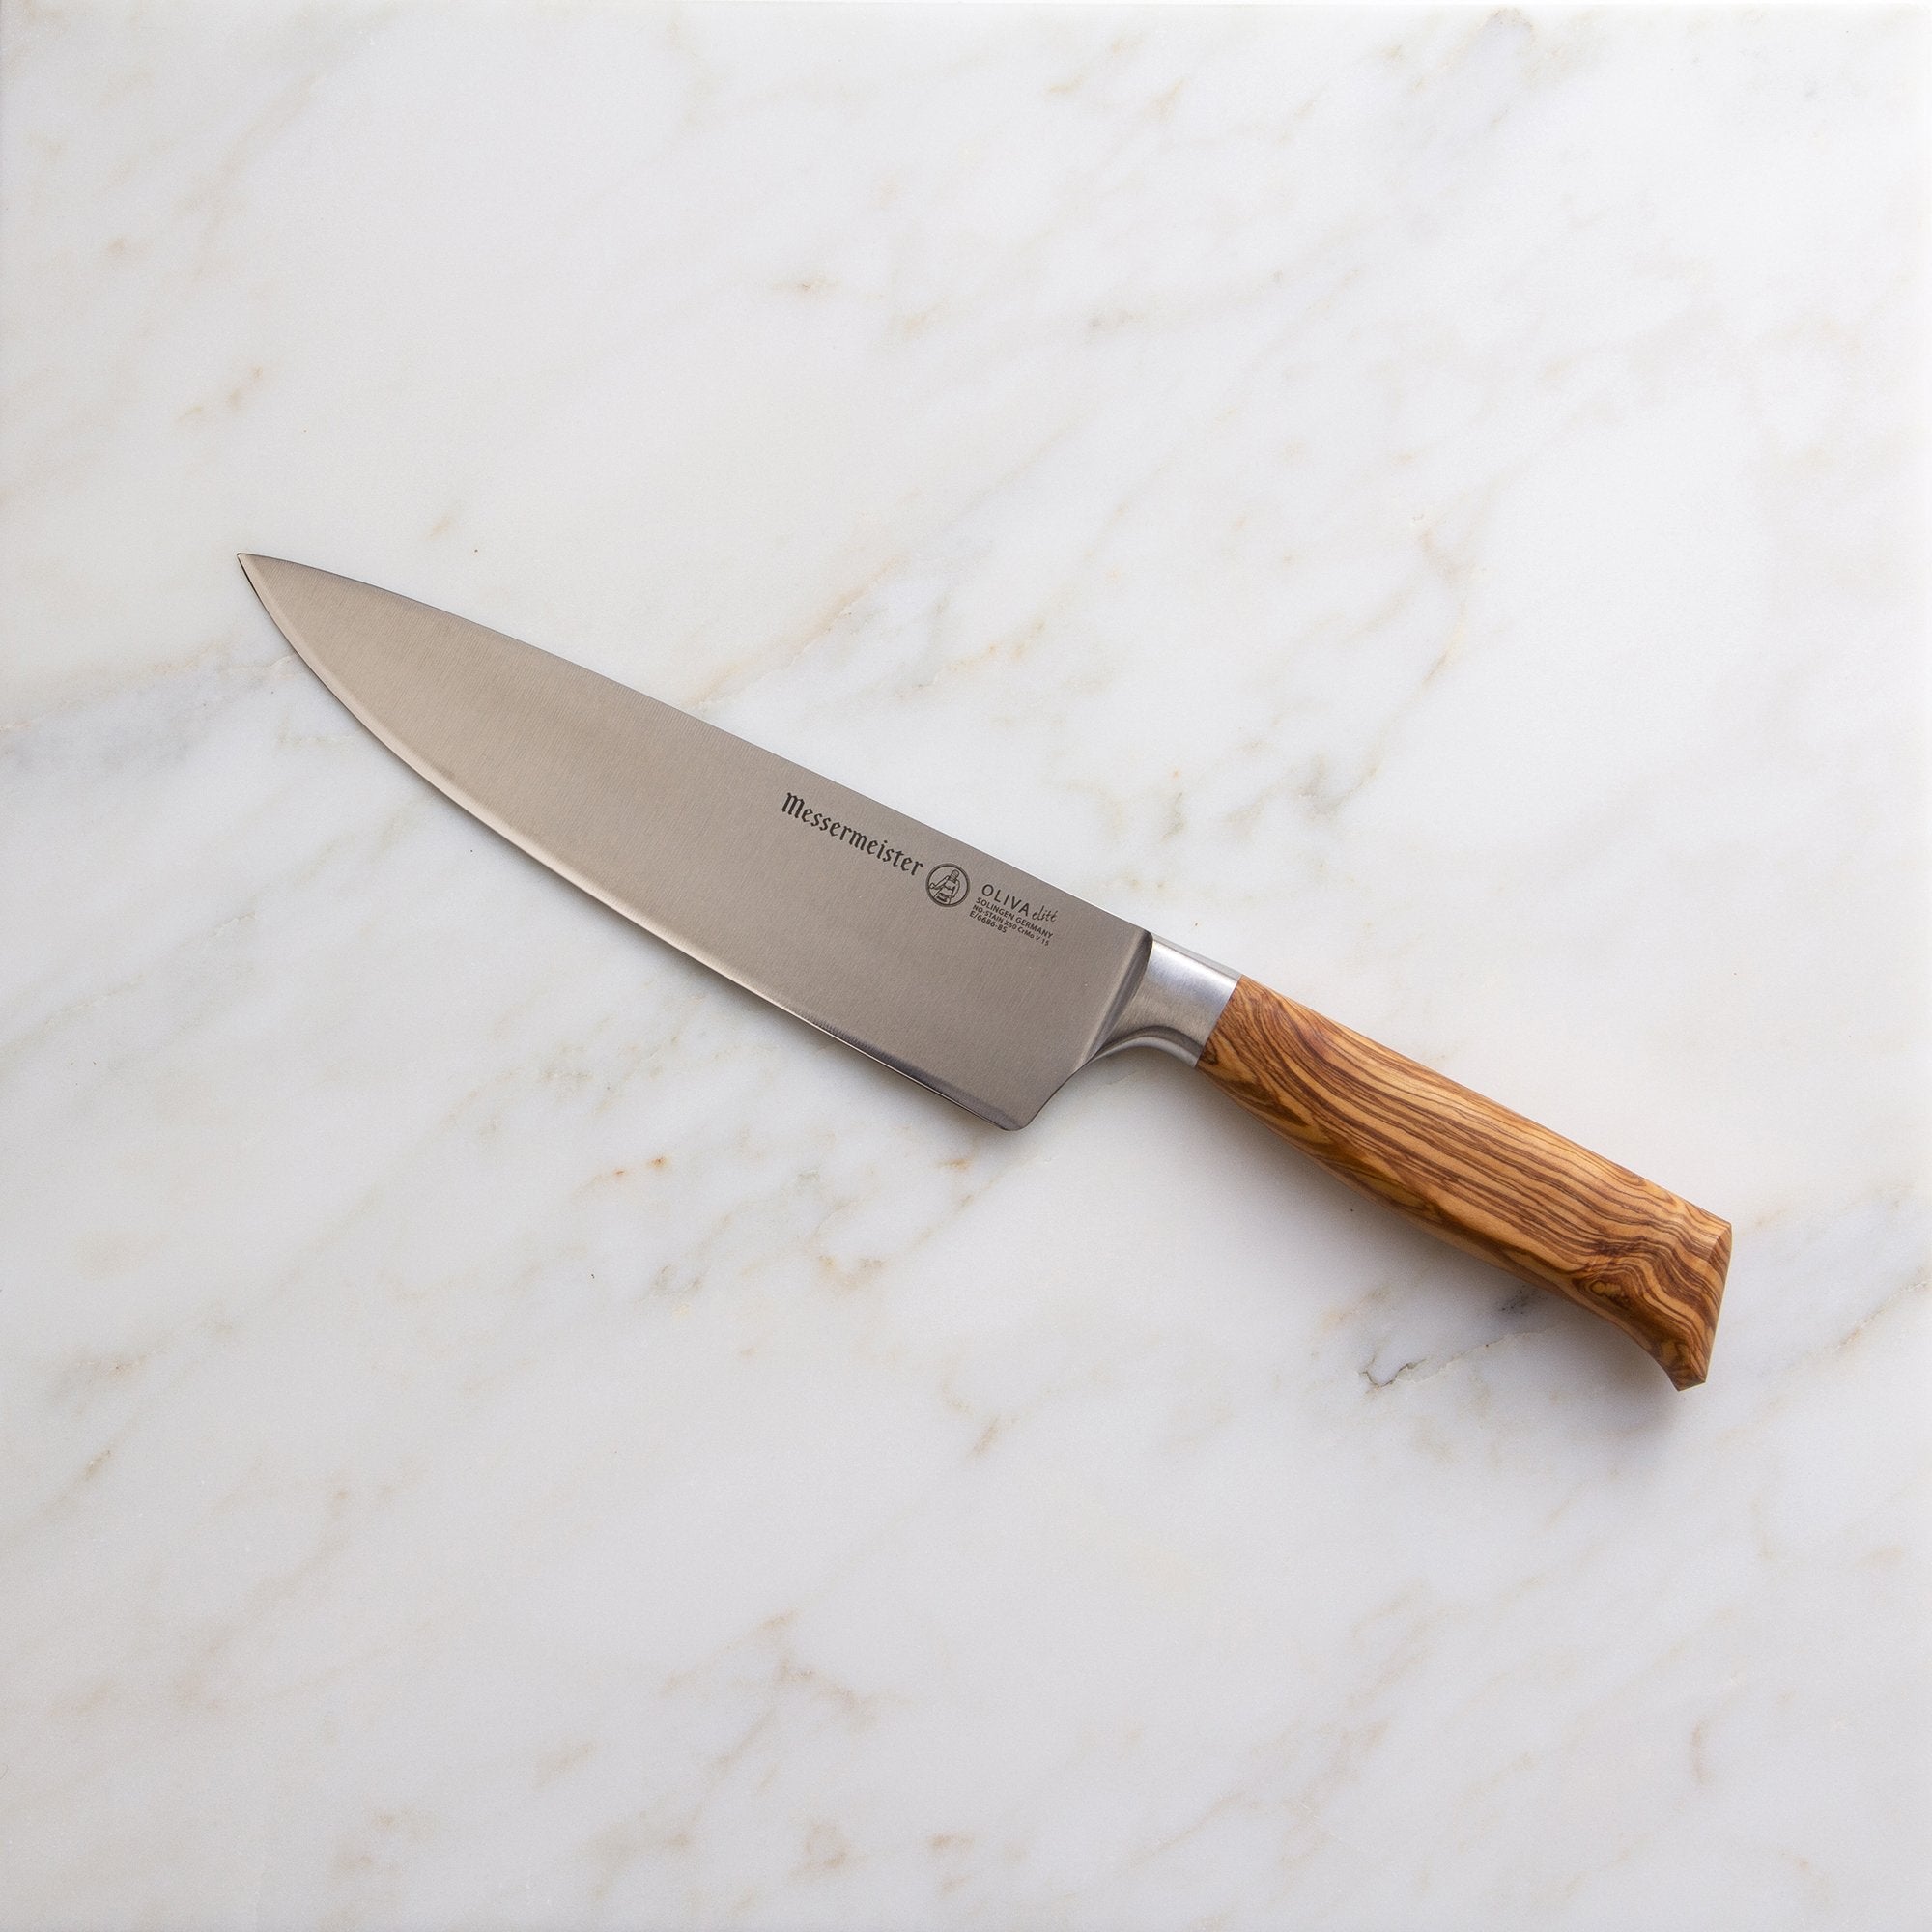 Oliva Elité Stealth Chef's Knife, 8"